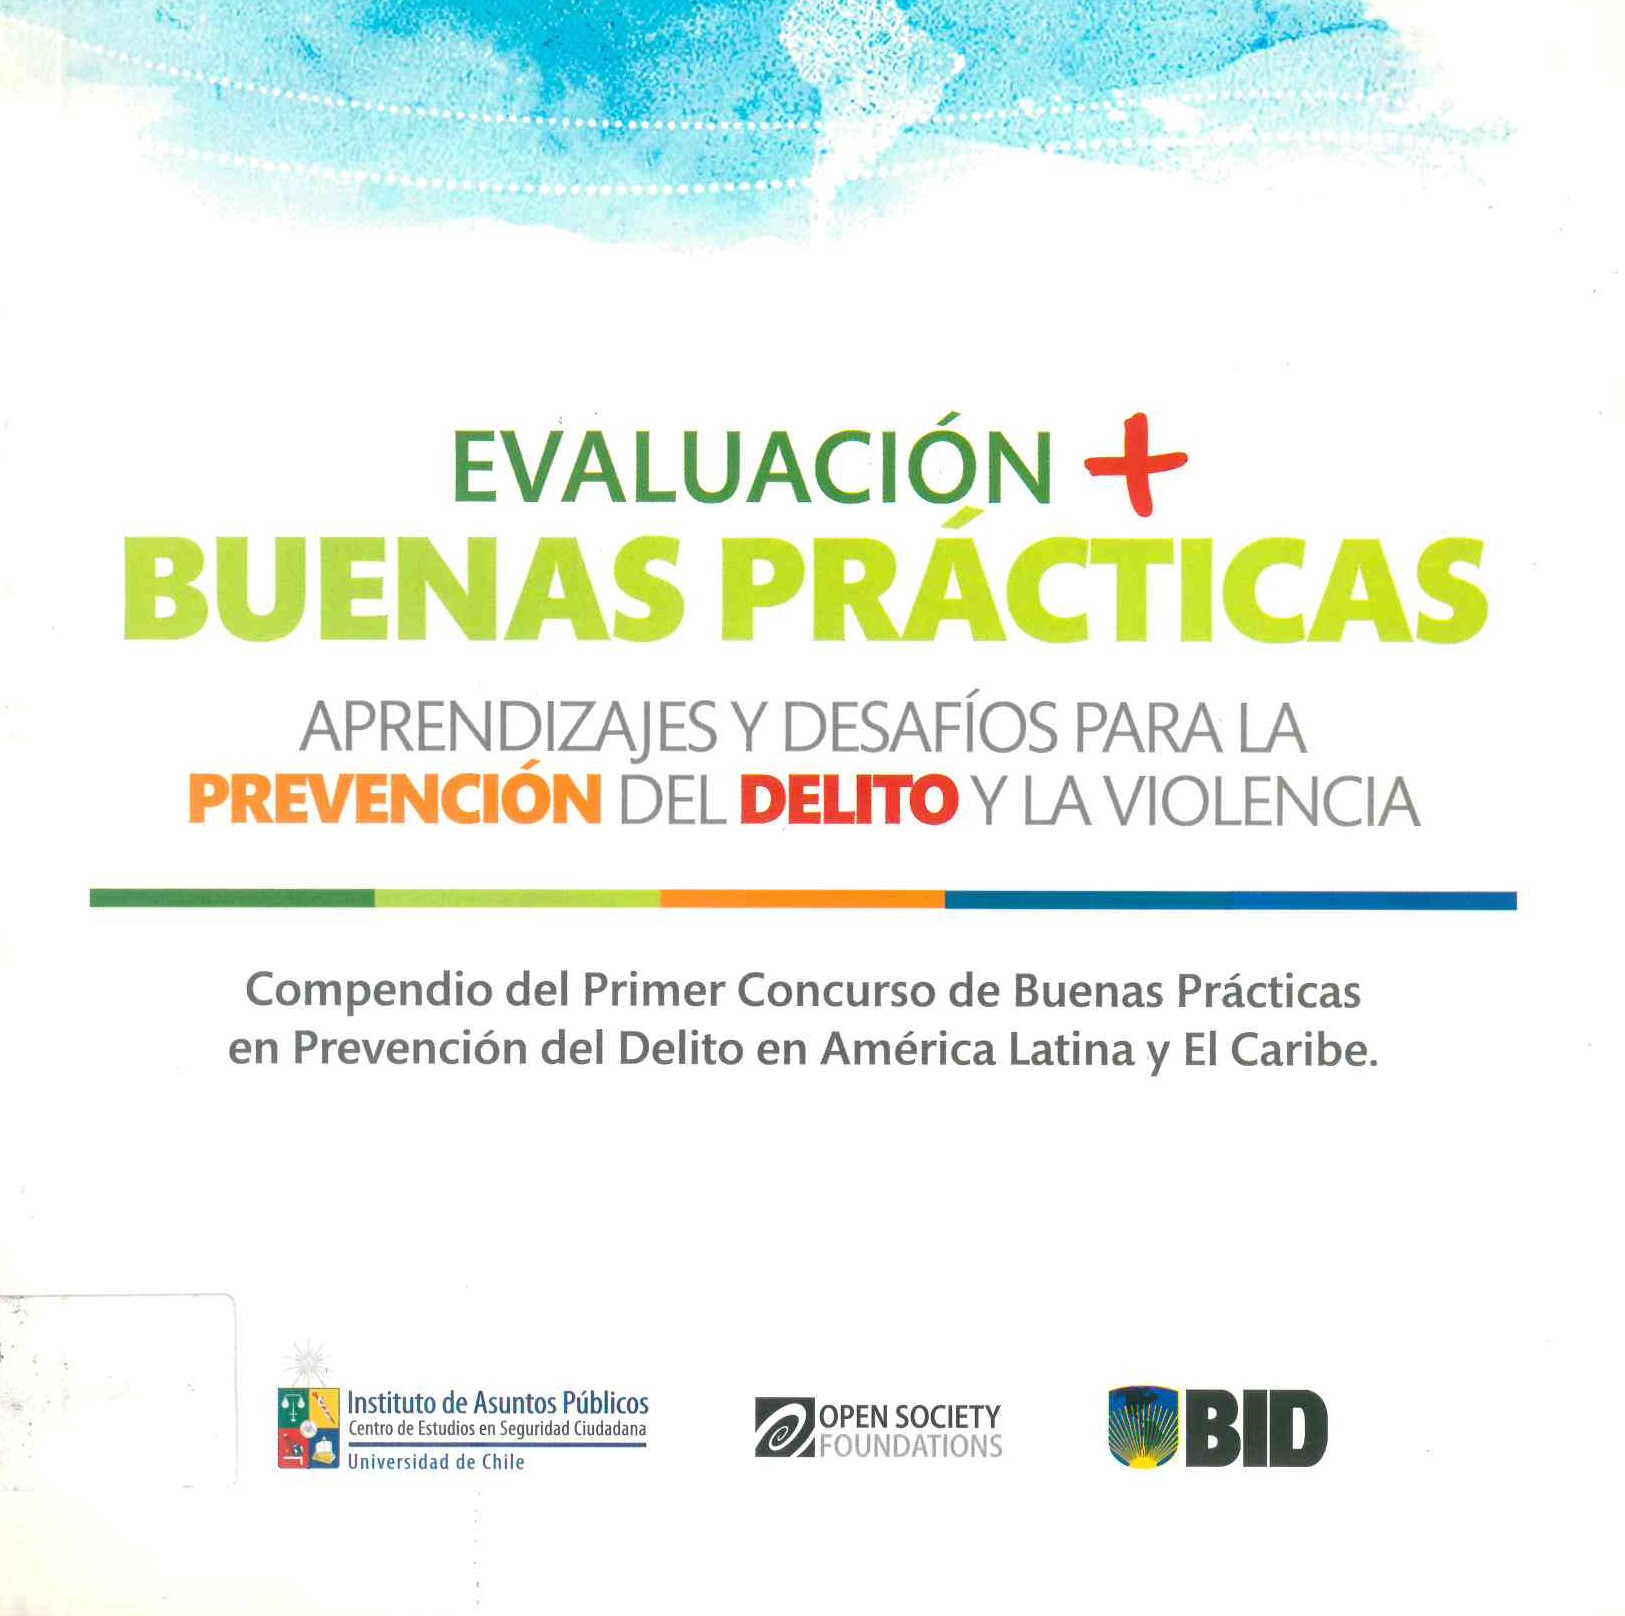 Evaluación y buenas prácticas aprendizajes y desafíos para la prevención del delito y la violencia compendio del primer concurso de buenas prácticas en prevención del delito en américa latina y el caribe.